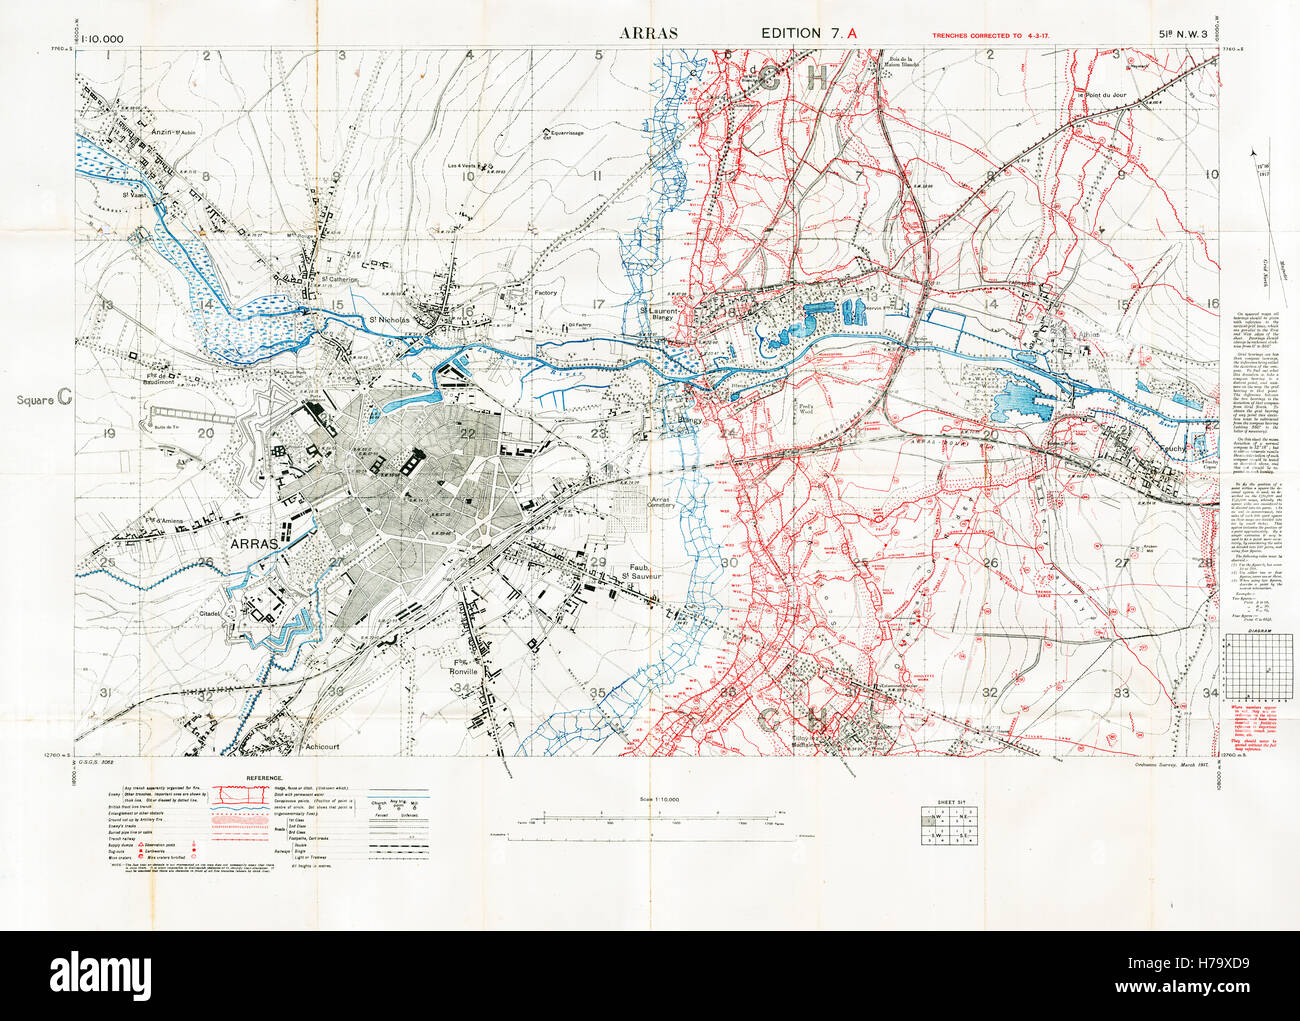 Arras Schlachtfeld Sektorkarte, 1917 Edition 7A 1: 10.000 Militärkarte des britischen Sektors in Nordfrankreich, mit Platz 51 b NW3, Gräben korrekt im März 1917 Stockfoto